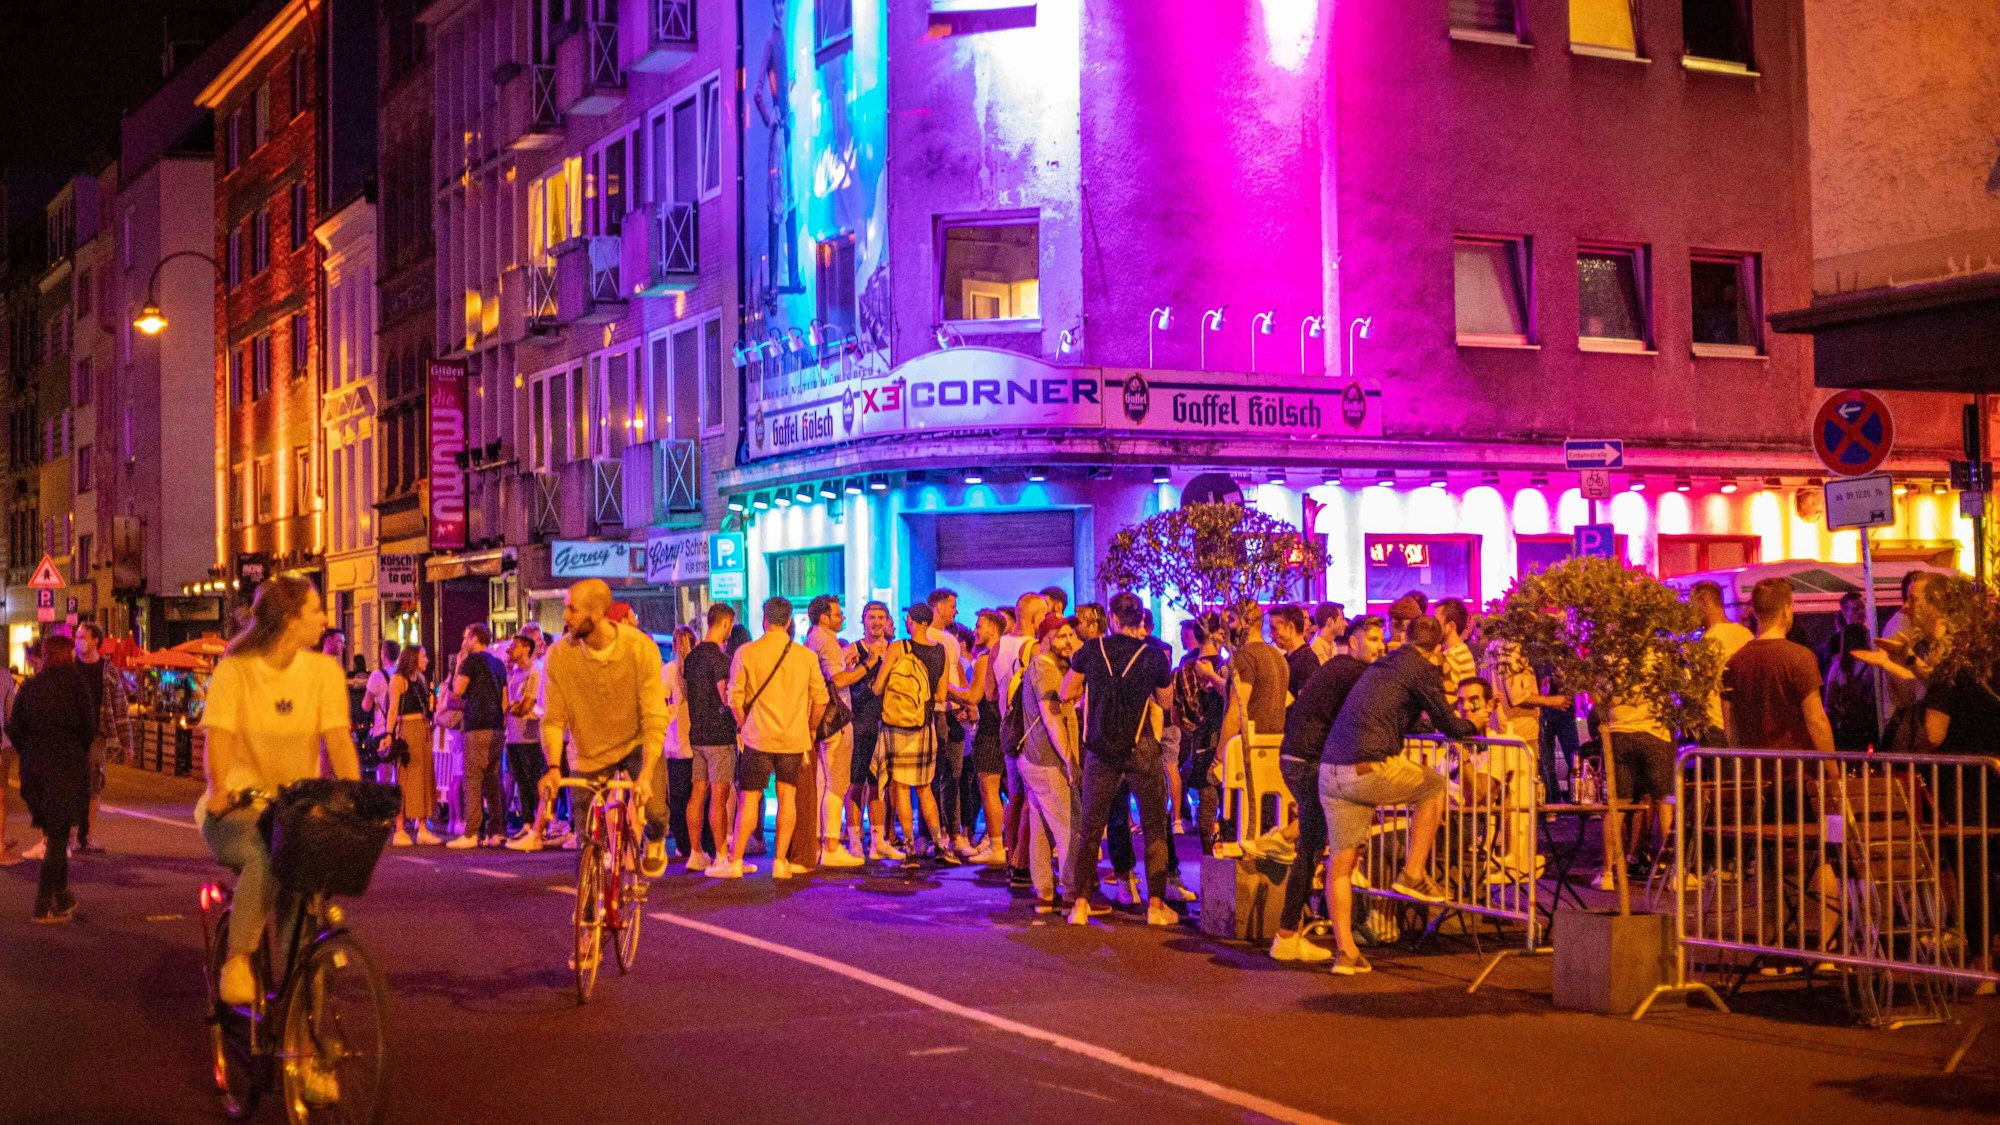 Vor der Bar X3 Corner an der Schaafenstraße stehen zahlreiche Party-Gäste.